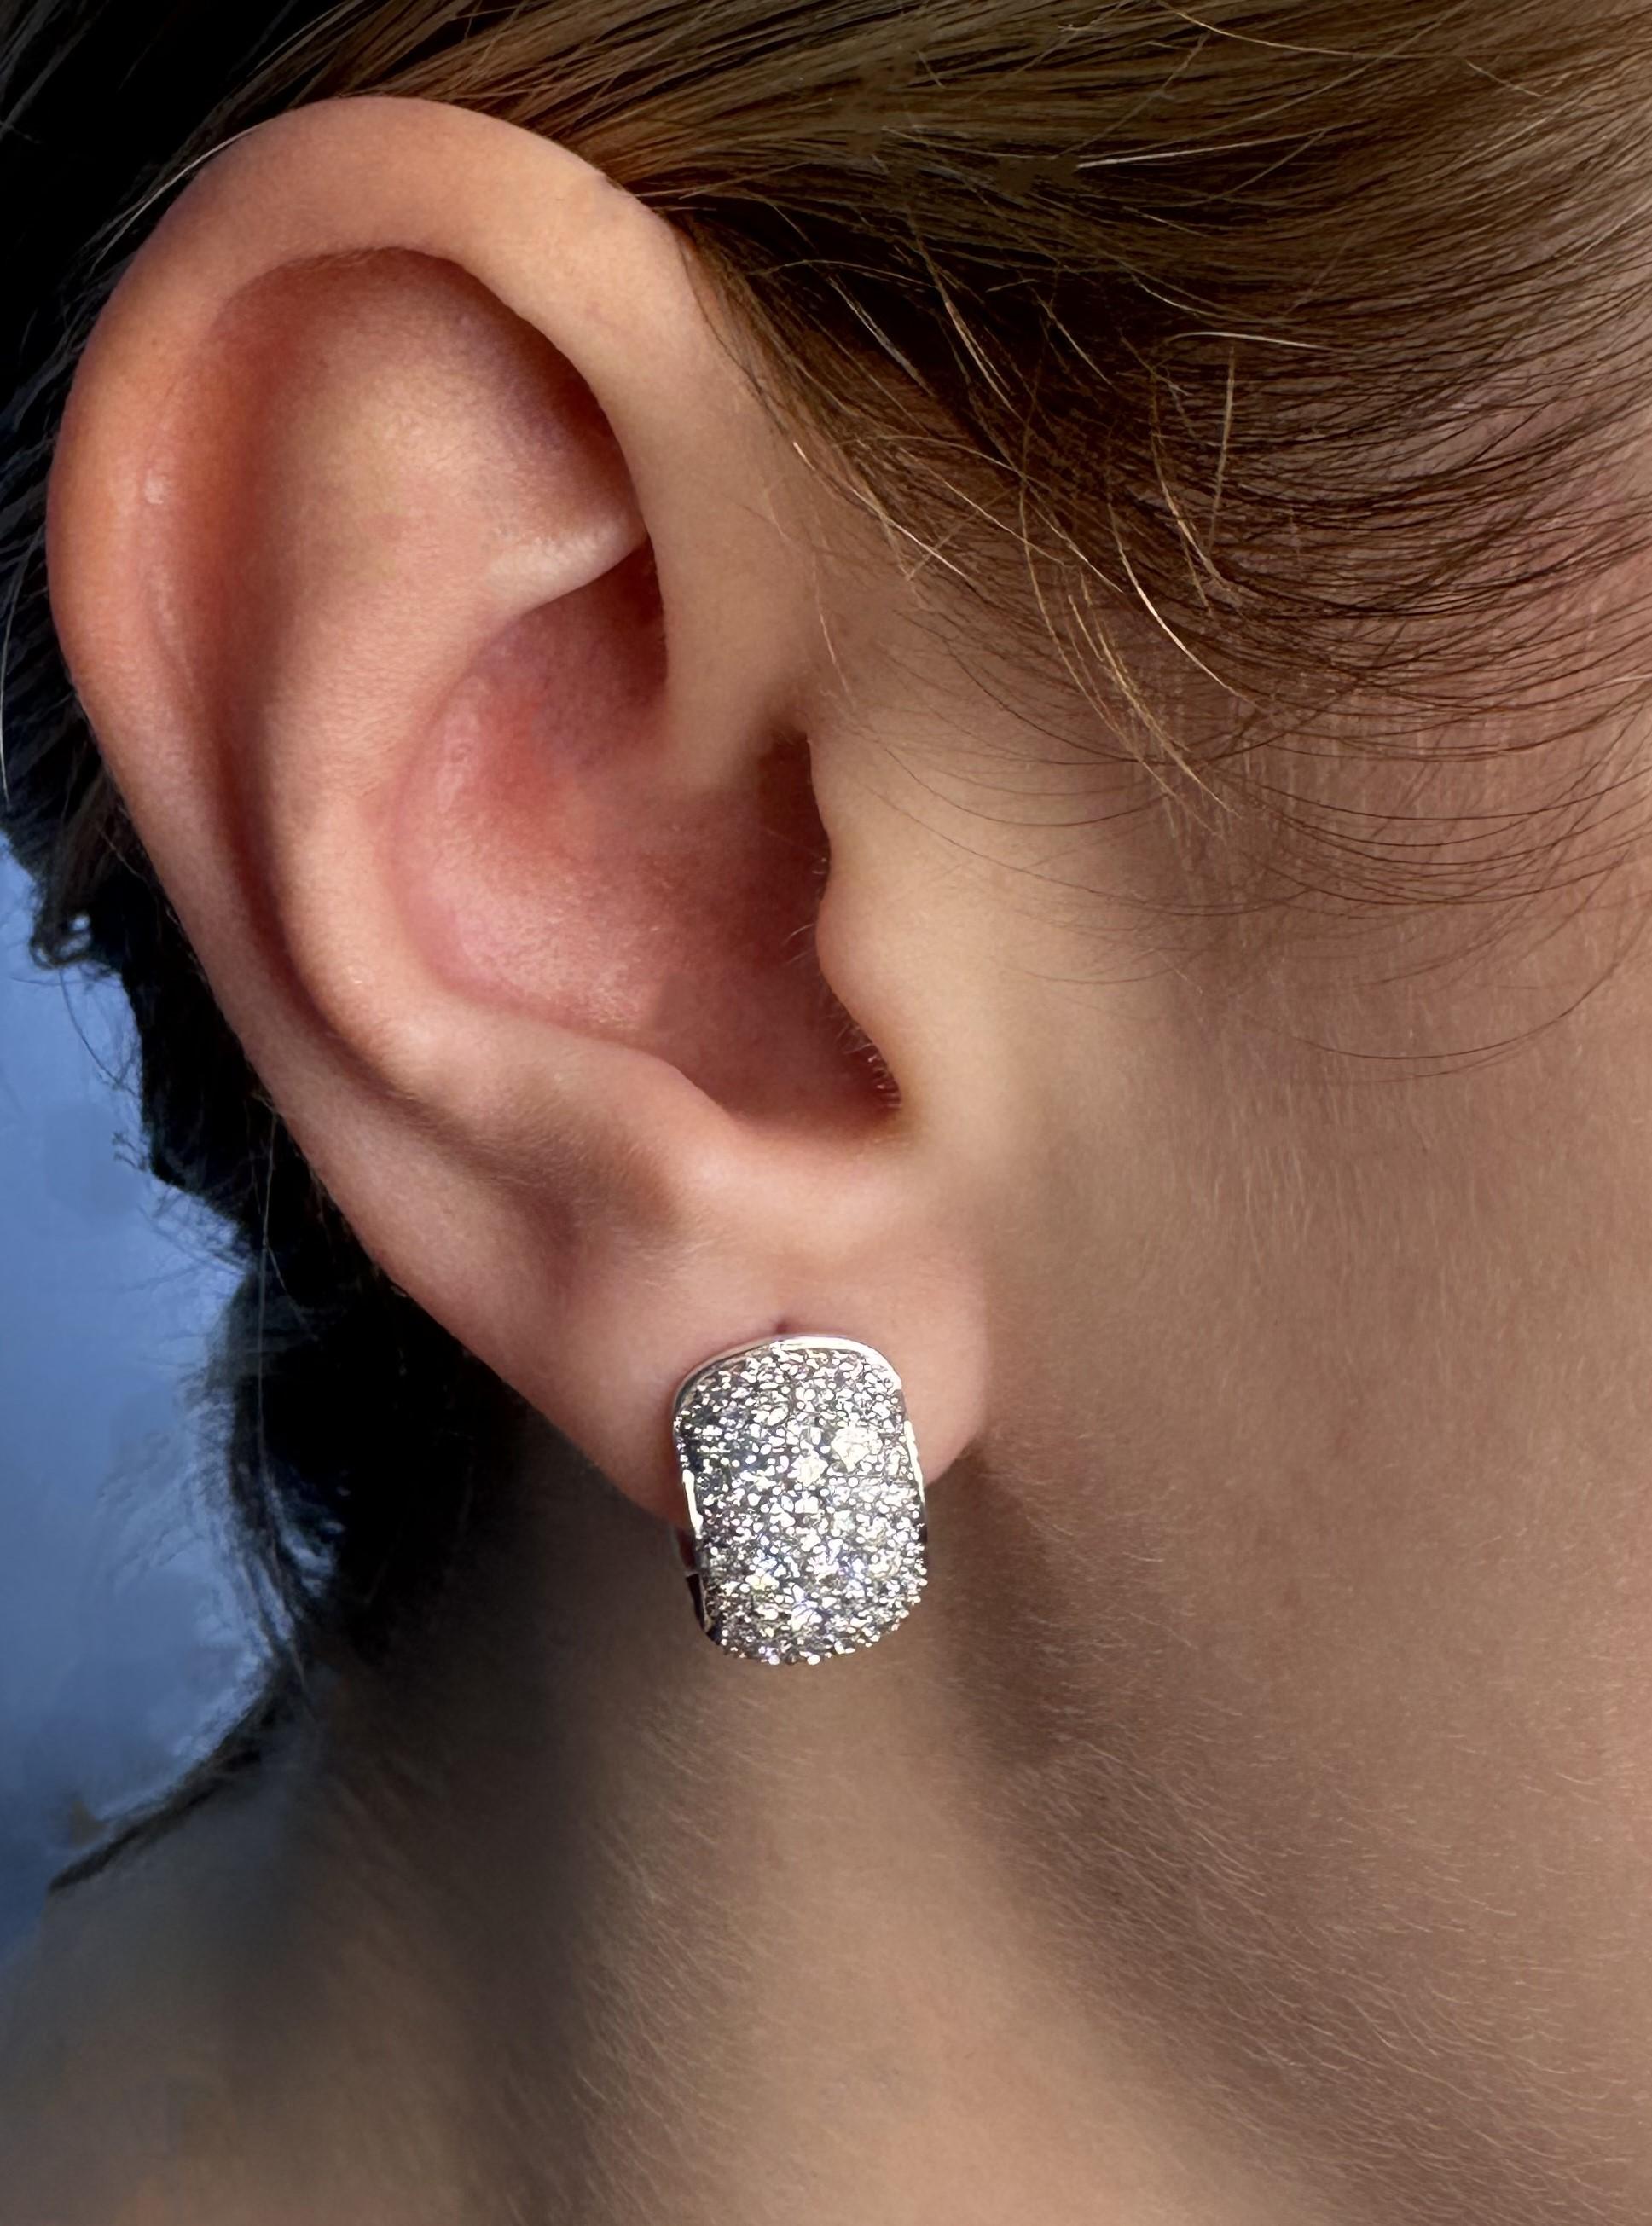 Diese schillernden Creolen sind mit 128 runden Brillanten in 6 verschiedenen Größen besetzt: 31 Diamanten mit einem Durchmesser von 1,5 mm, 12 Diamanten mit einem Durchmesser von 1,1 mm, 10 Diamanten mit einem Durchmesser von 1,3 mm, 5 Diamanten mit